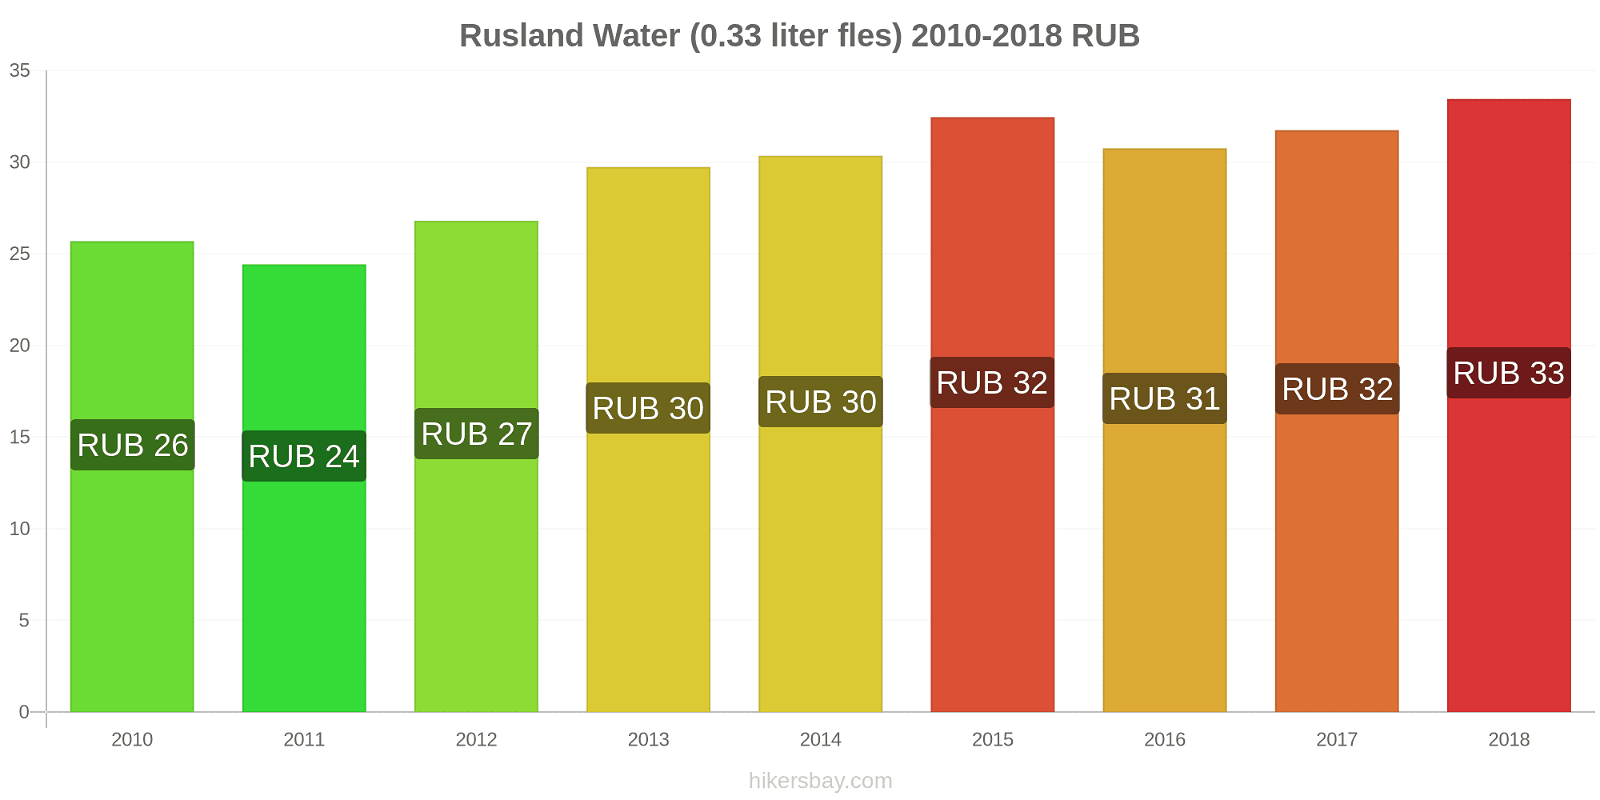 Rusland prijswijzigingen Water (0.33 liter fles) hikersbay.com